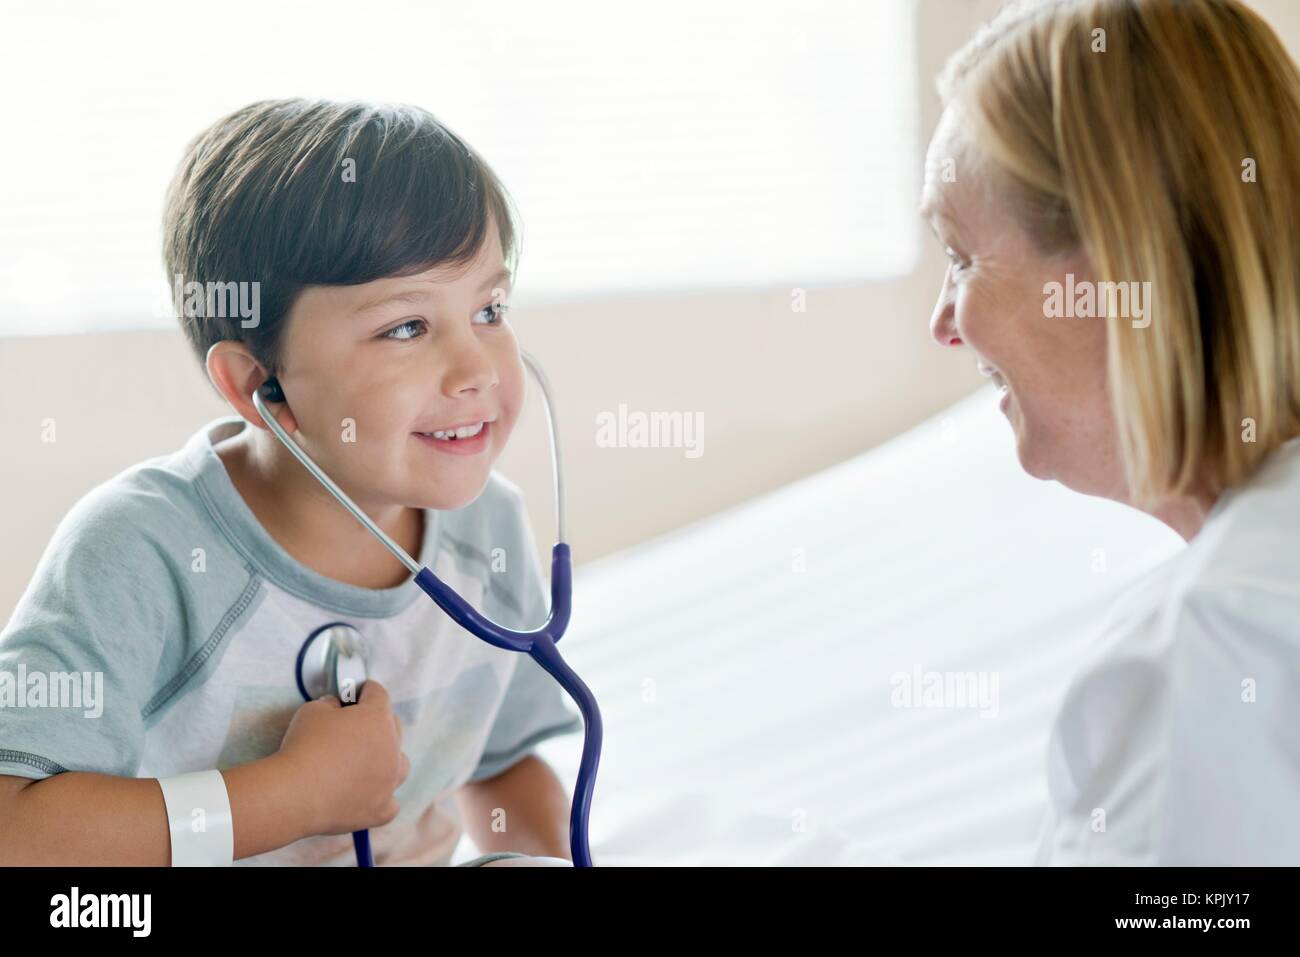 Young boy smiling towards nurse wearing stethoscope. Stock Photo